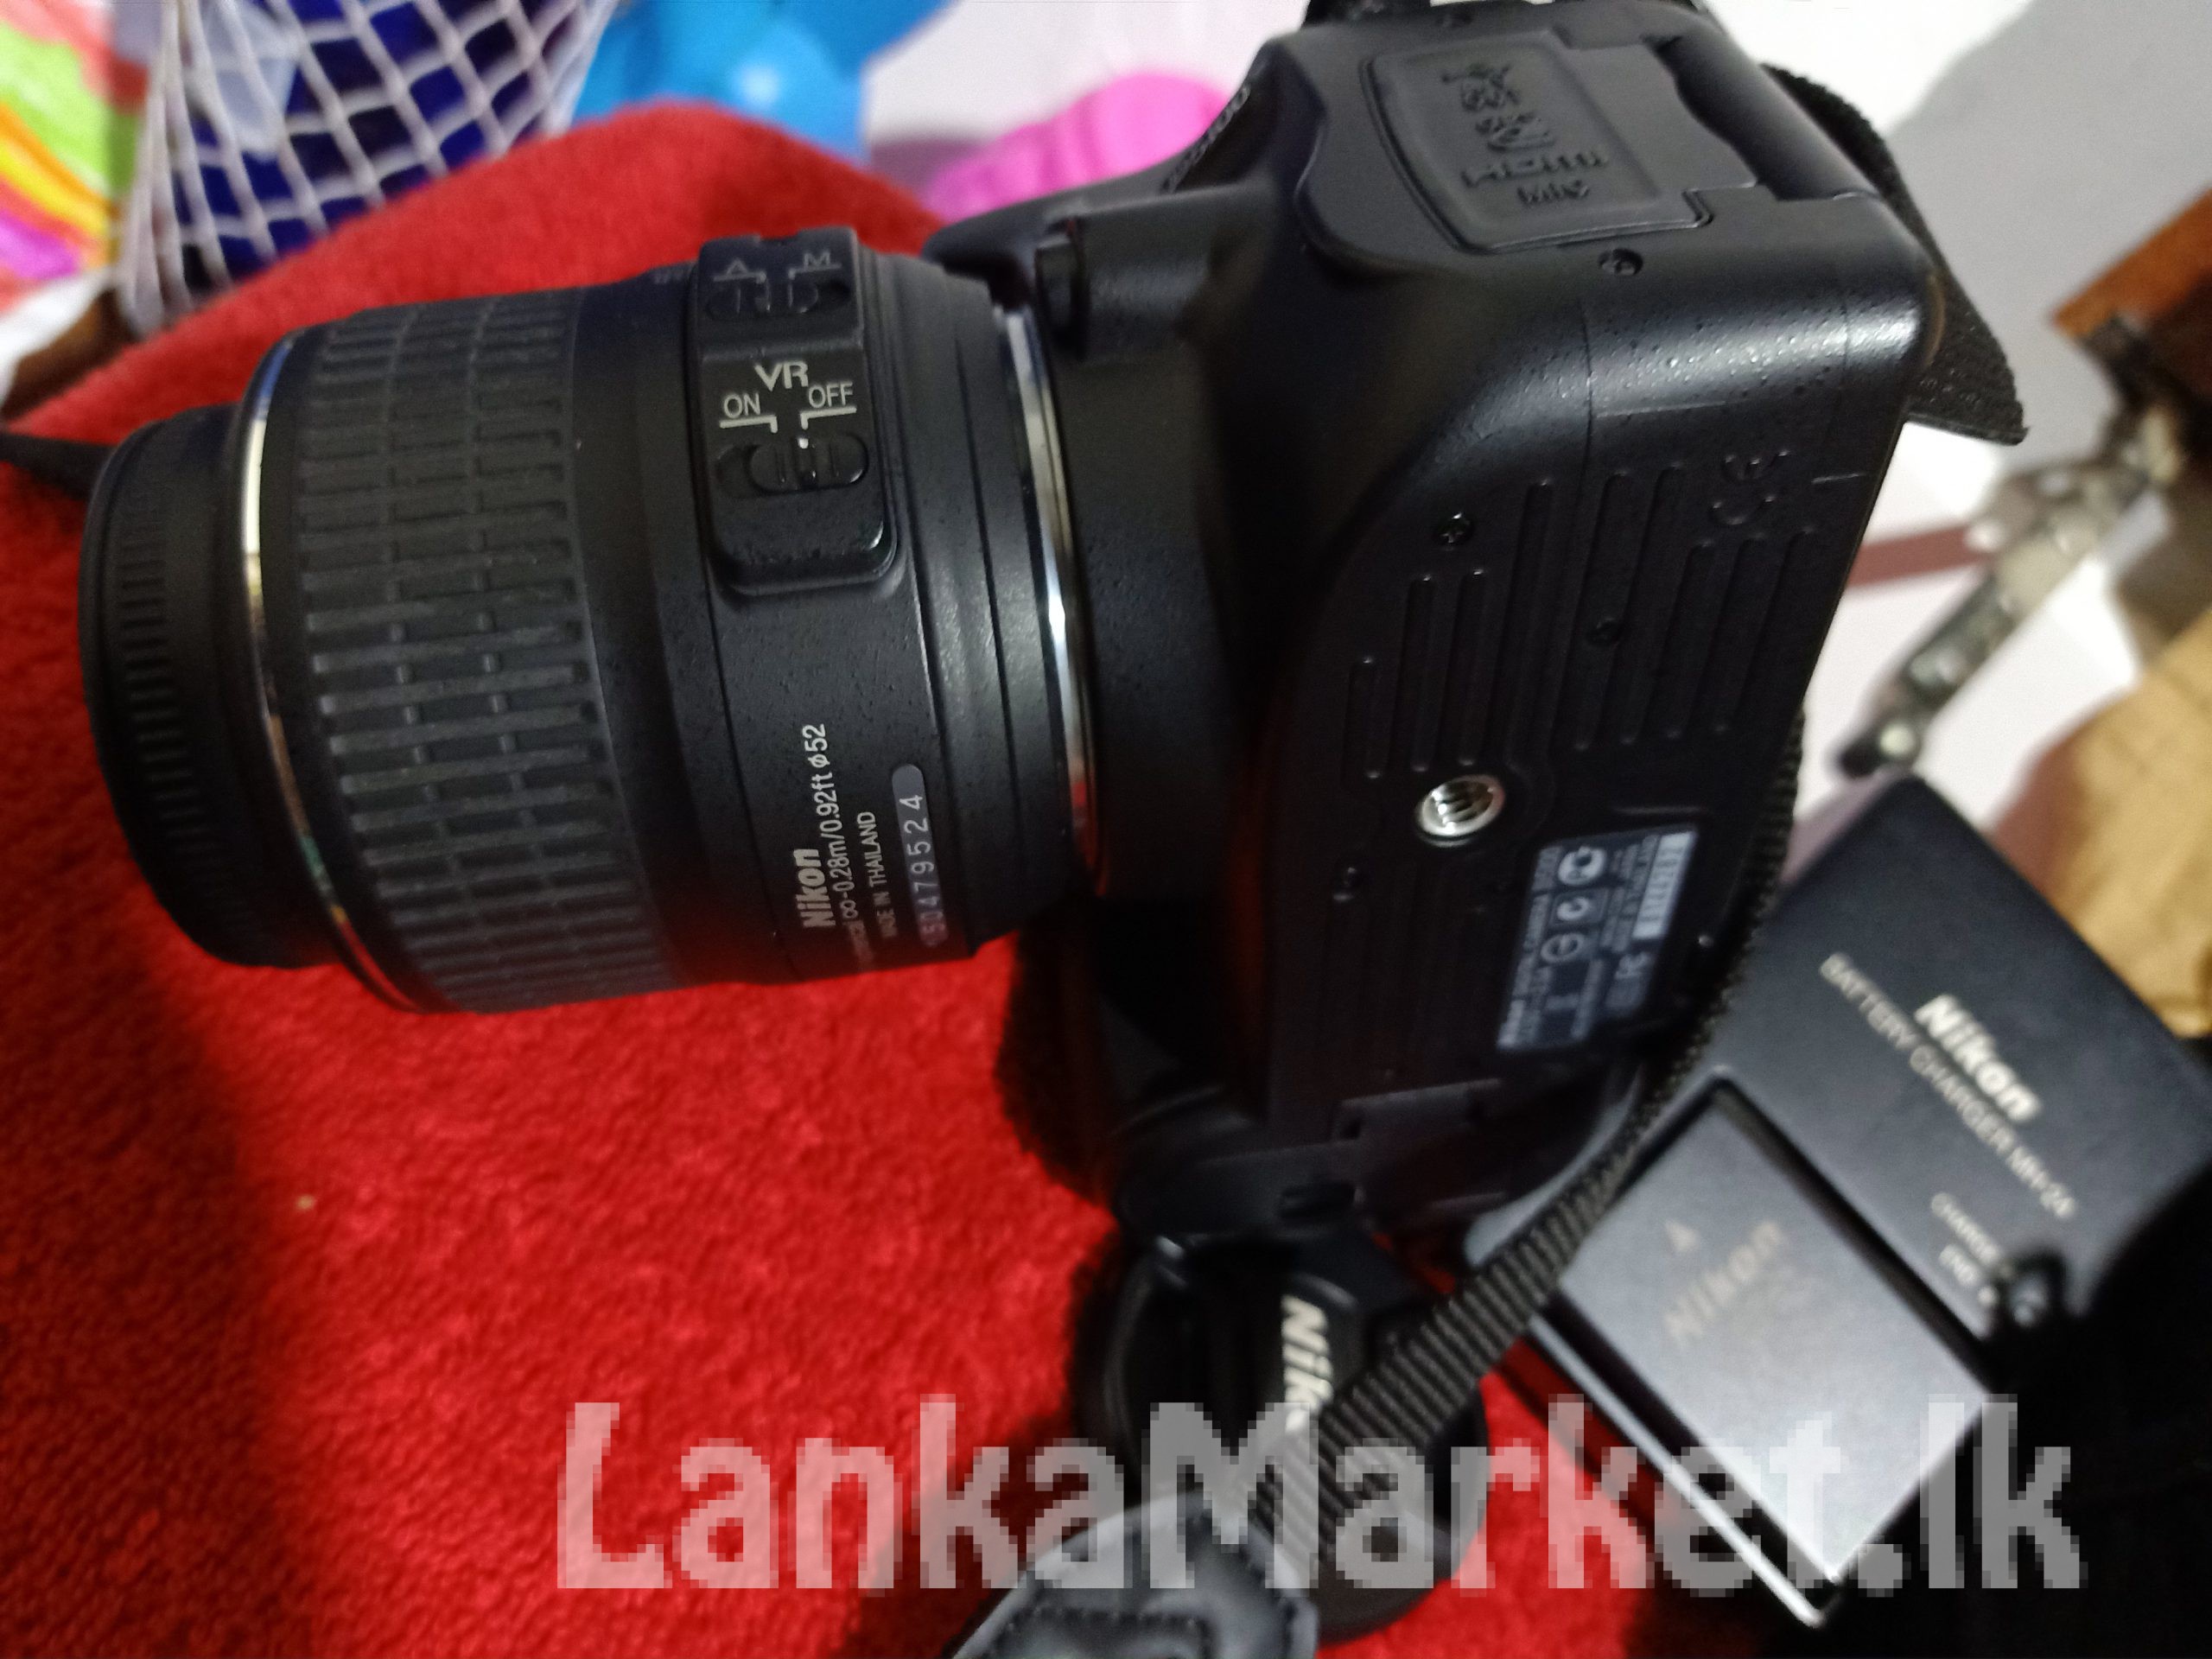 Nikon D 5100 Camara in Mirigama(Gampaha)